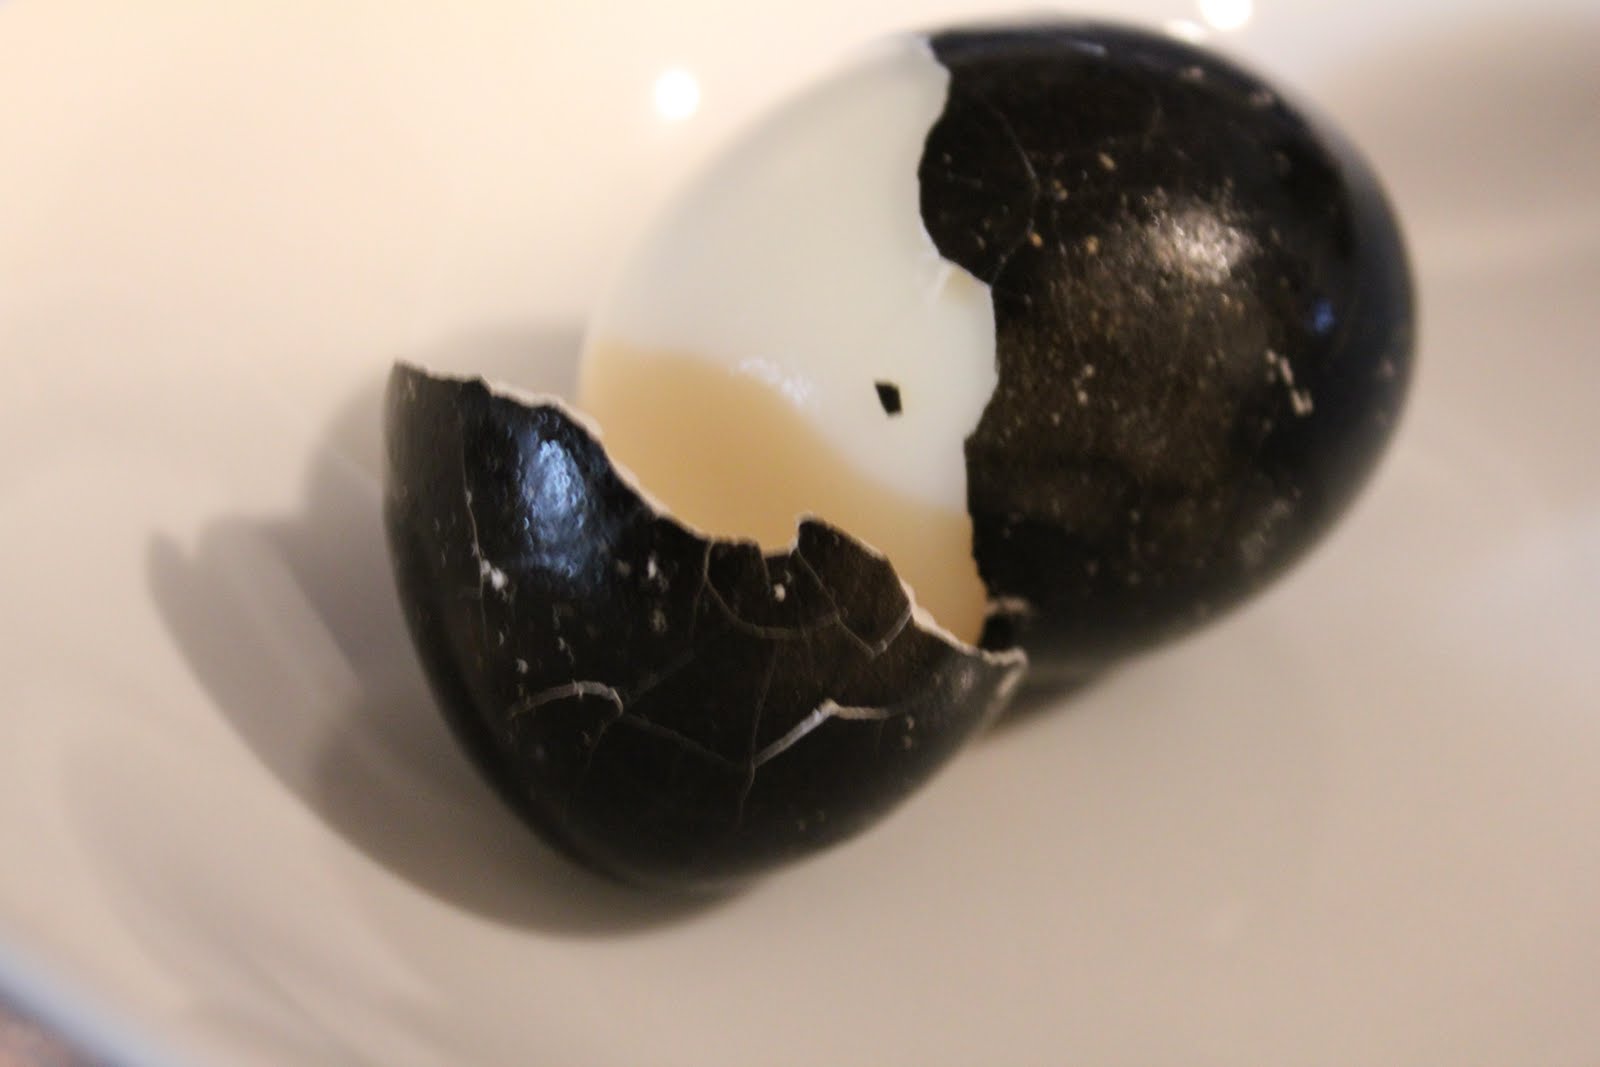 Cracking the Black Egg | Stuart Wilde